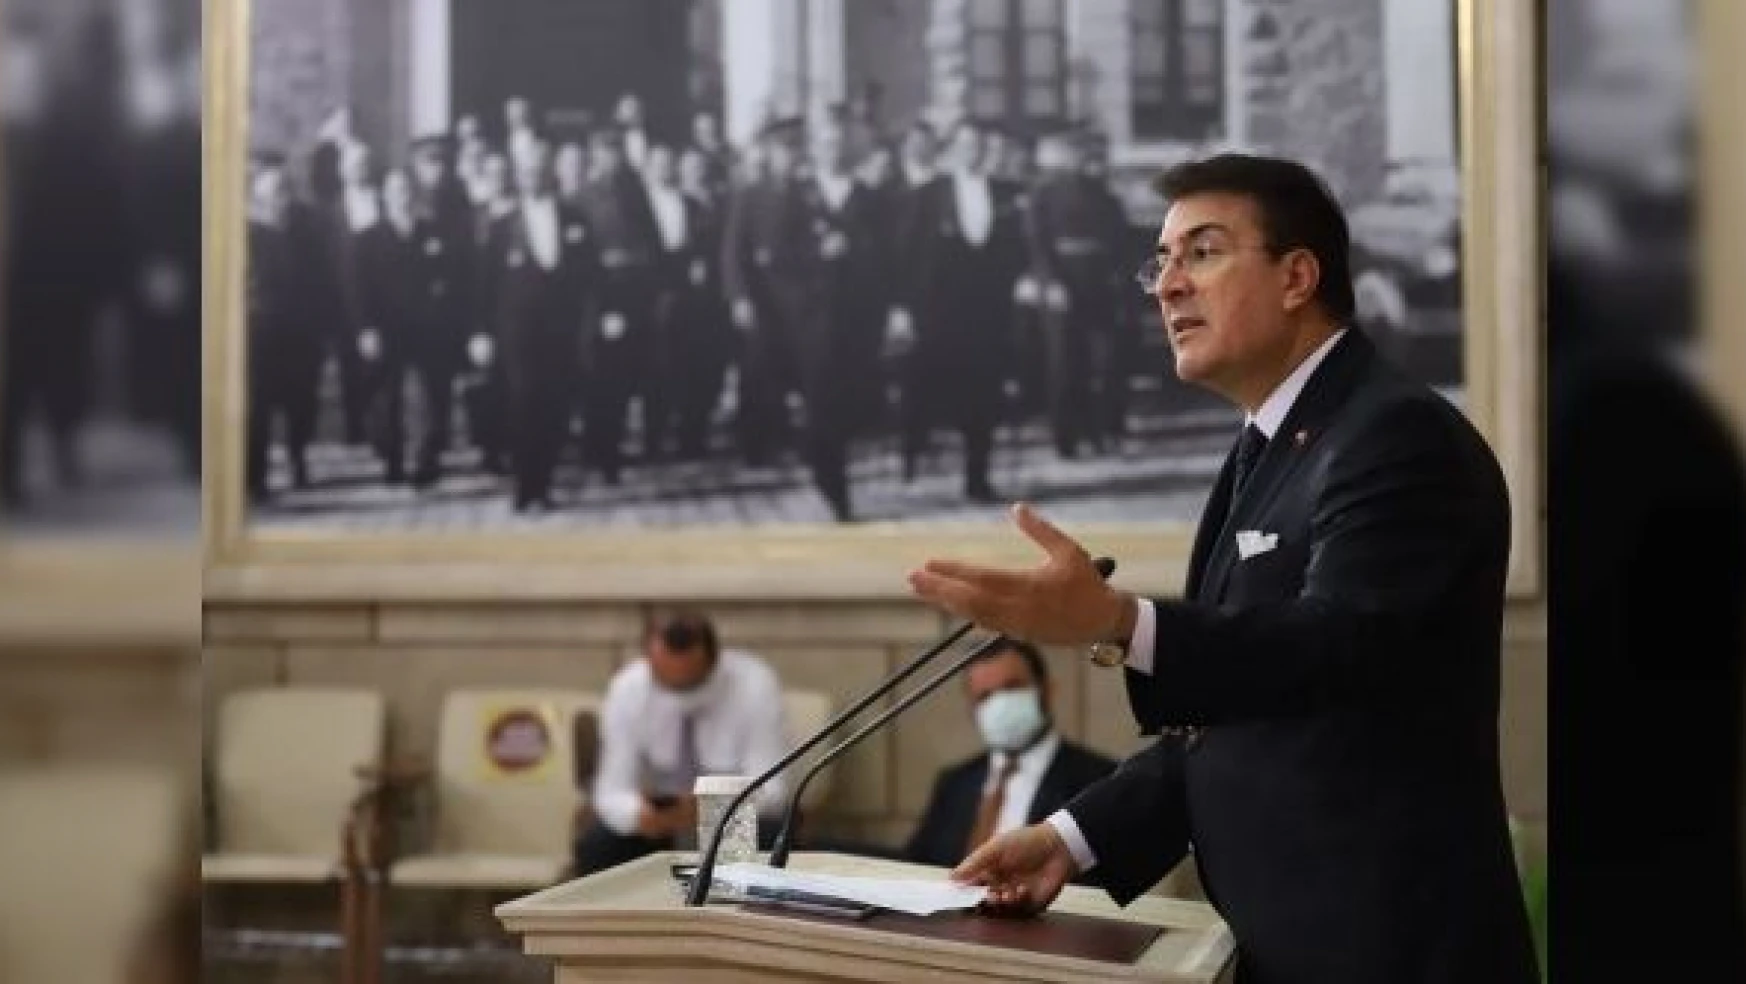 Erzurum Milletvekili Aydemir: "Hak teslimi bir erdemdir"